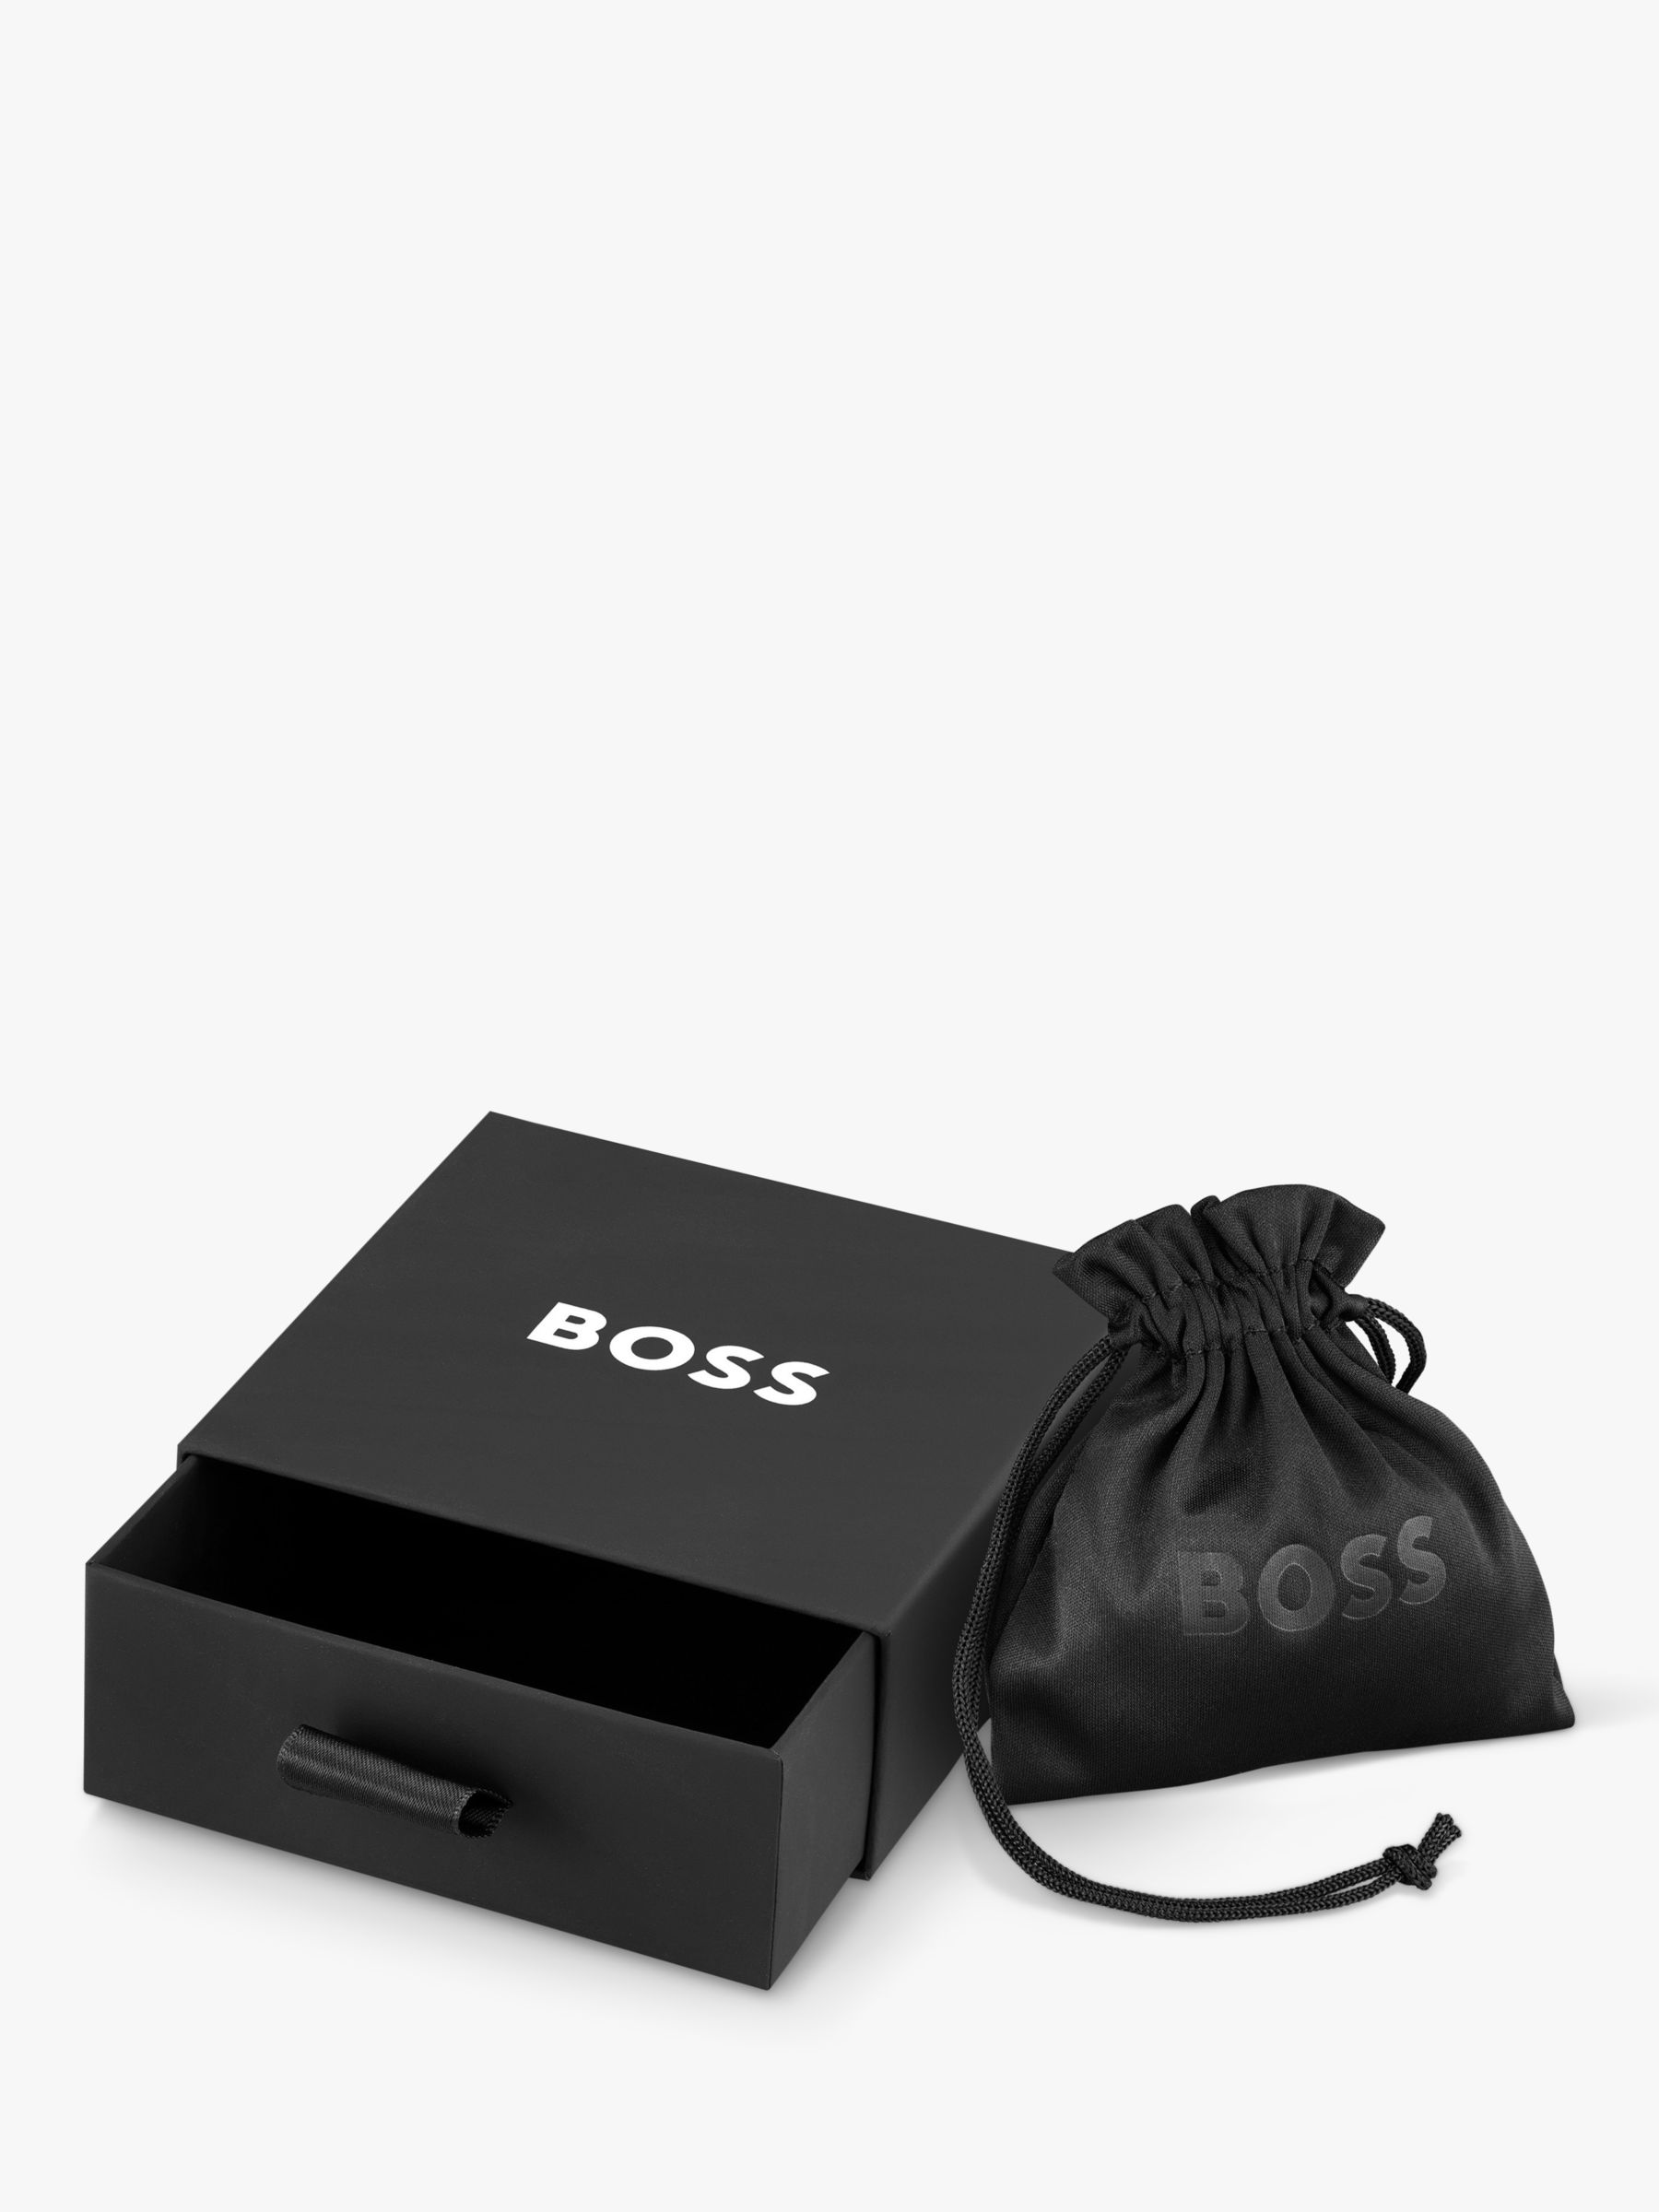 BOSS Men's Leather Double Braided Bracelet, Black